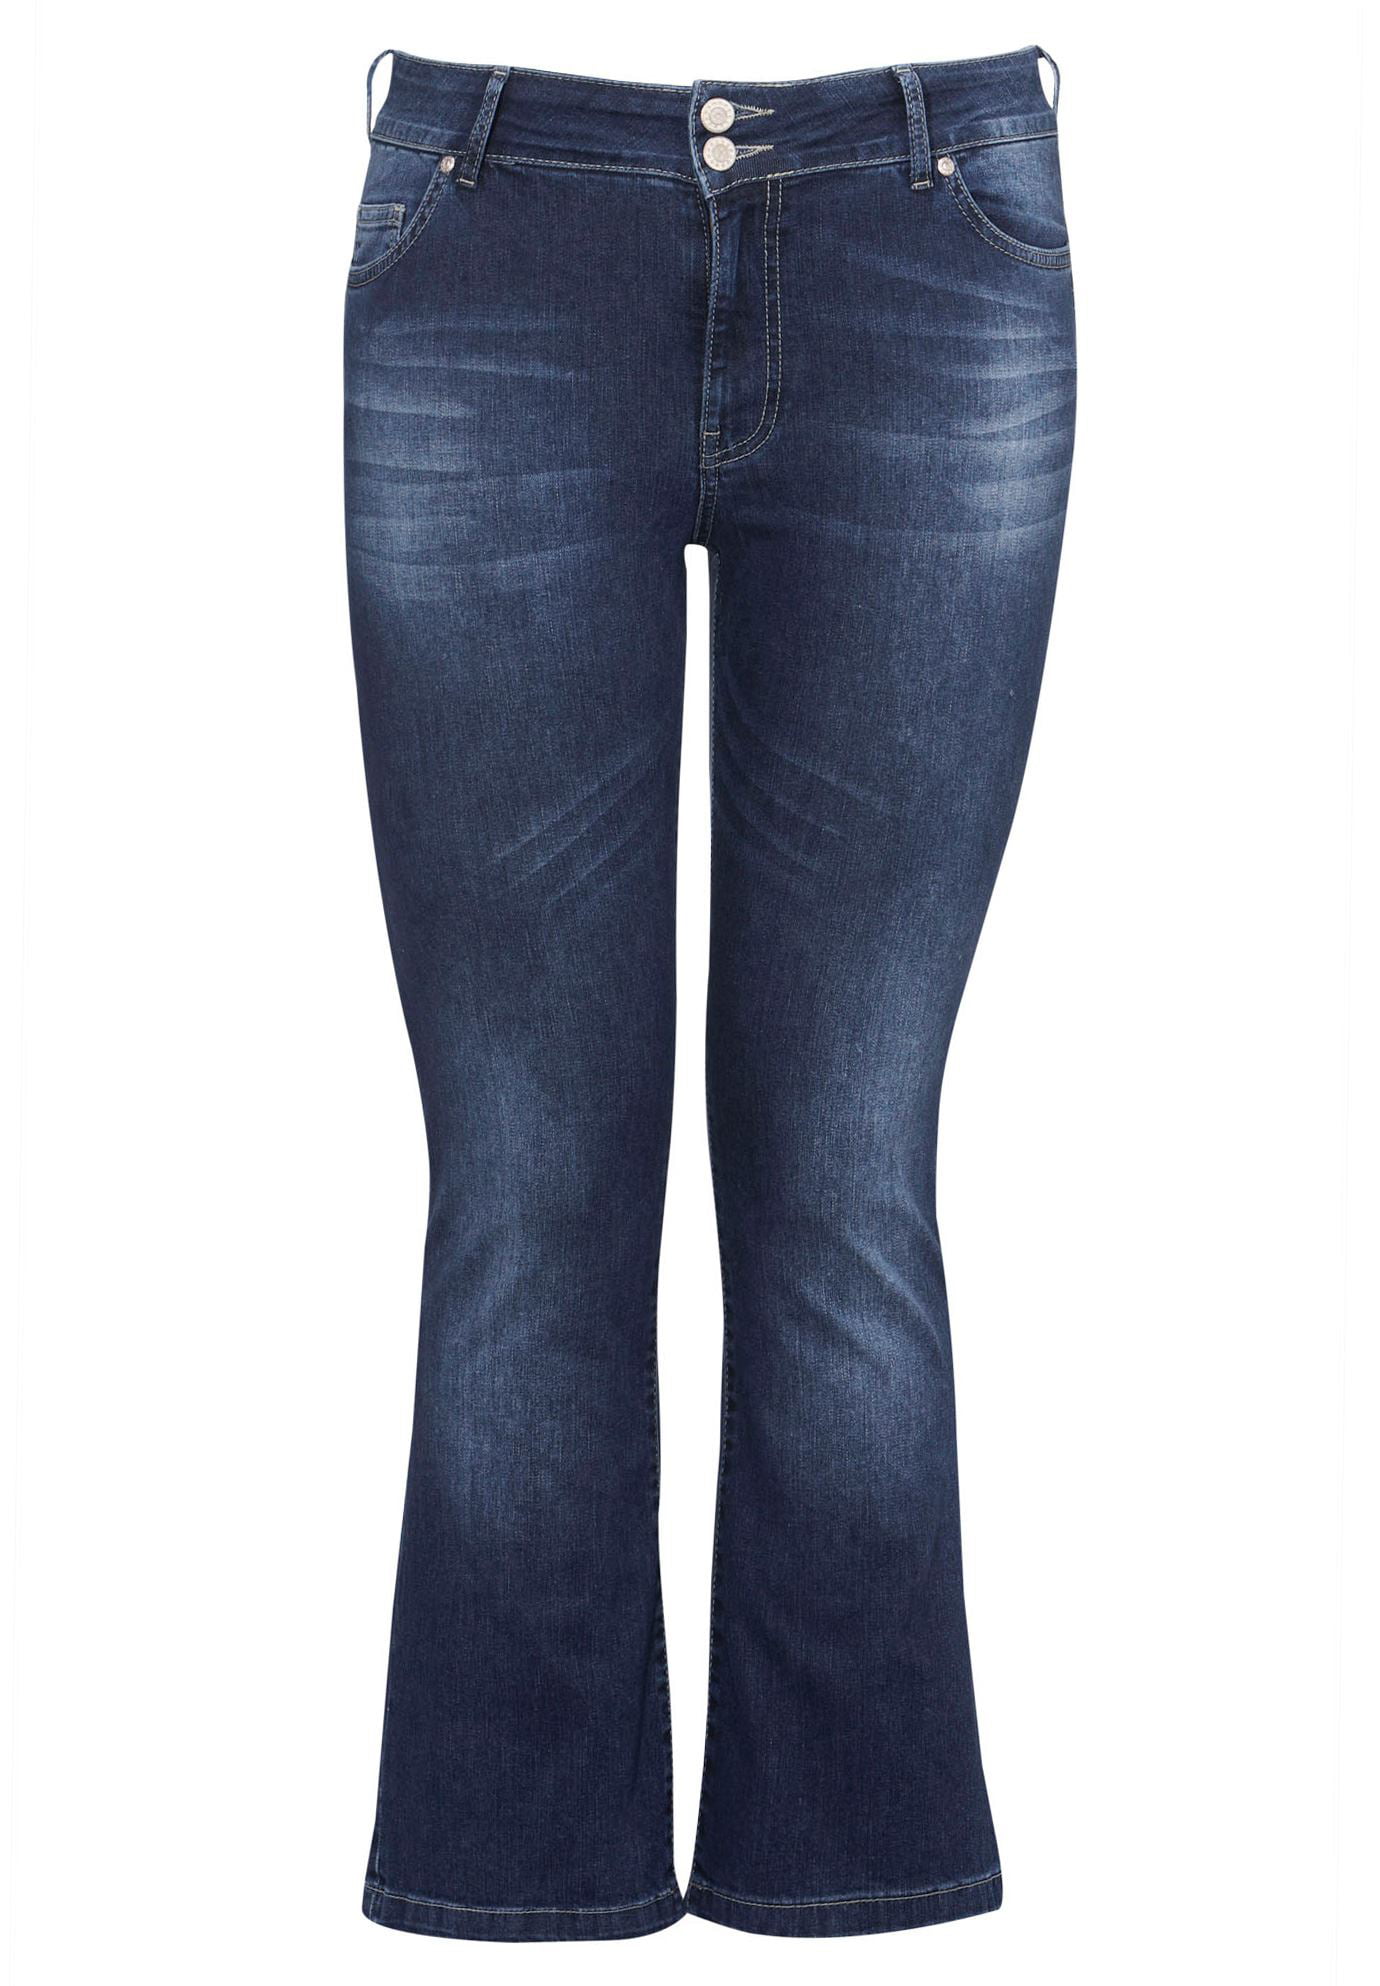 walmart women's jeans plus size